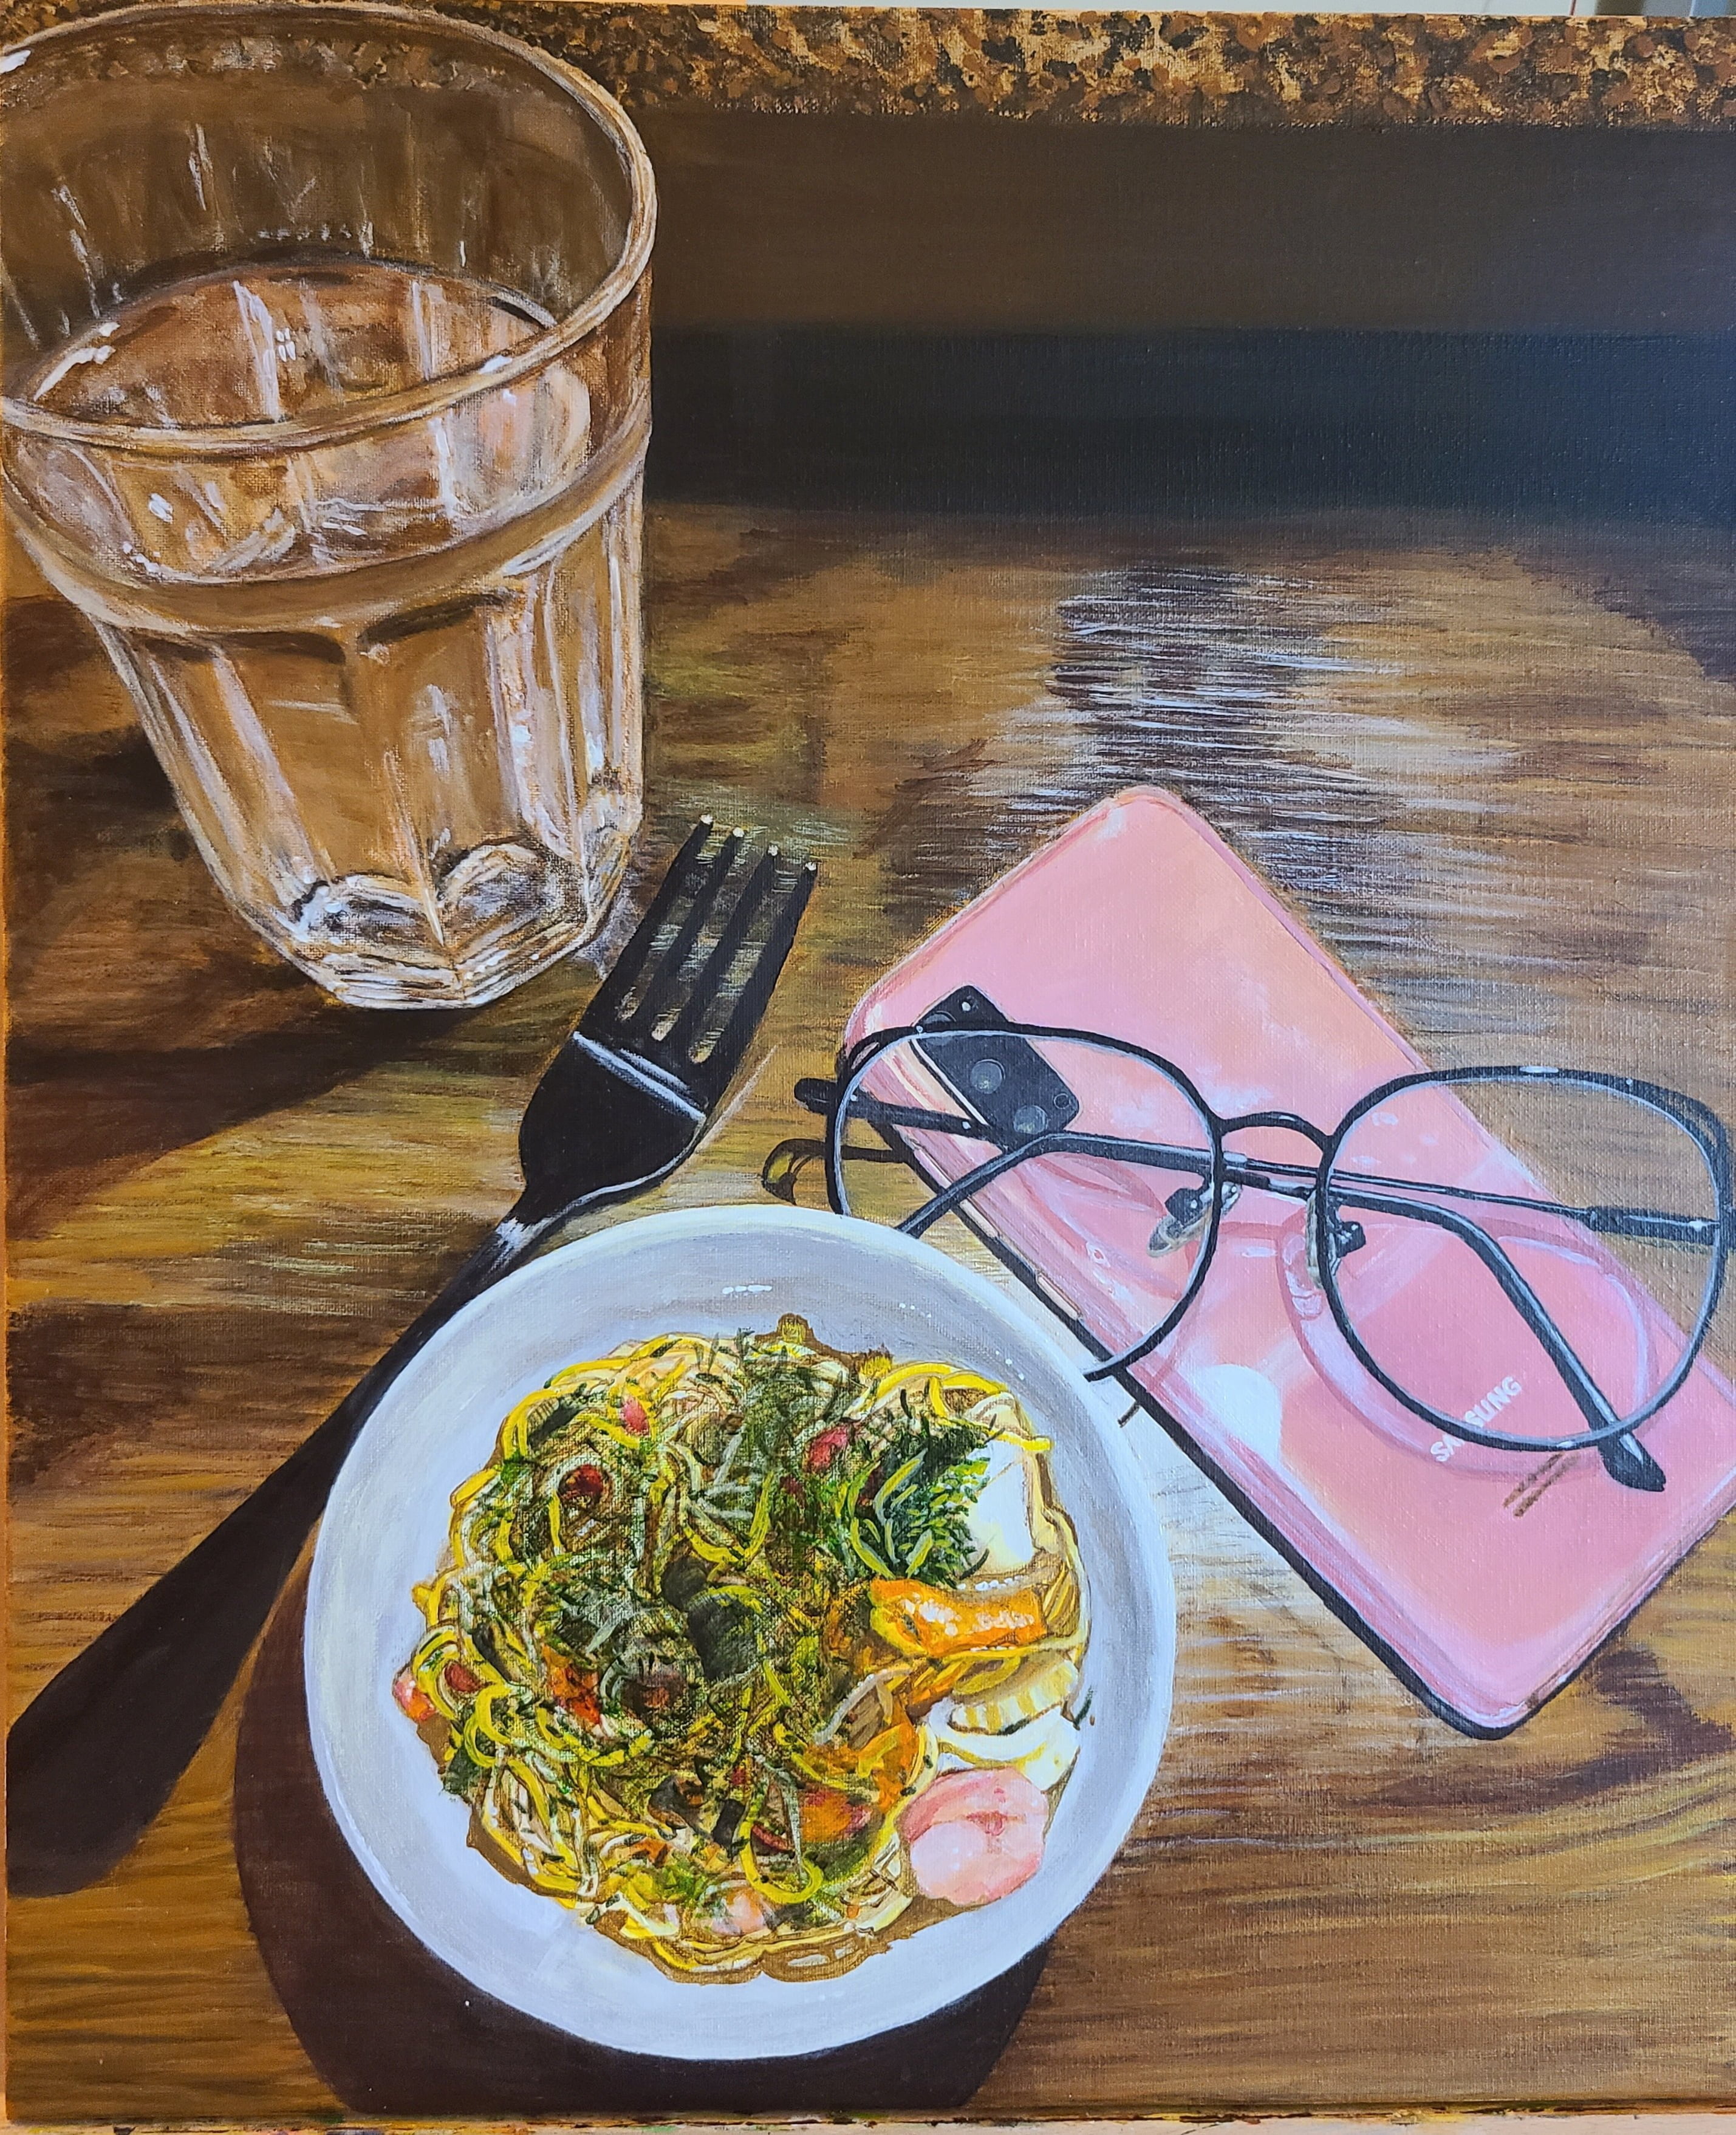 Lynn Nguyen – Solo Dining